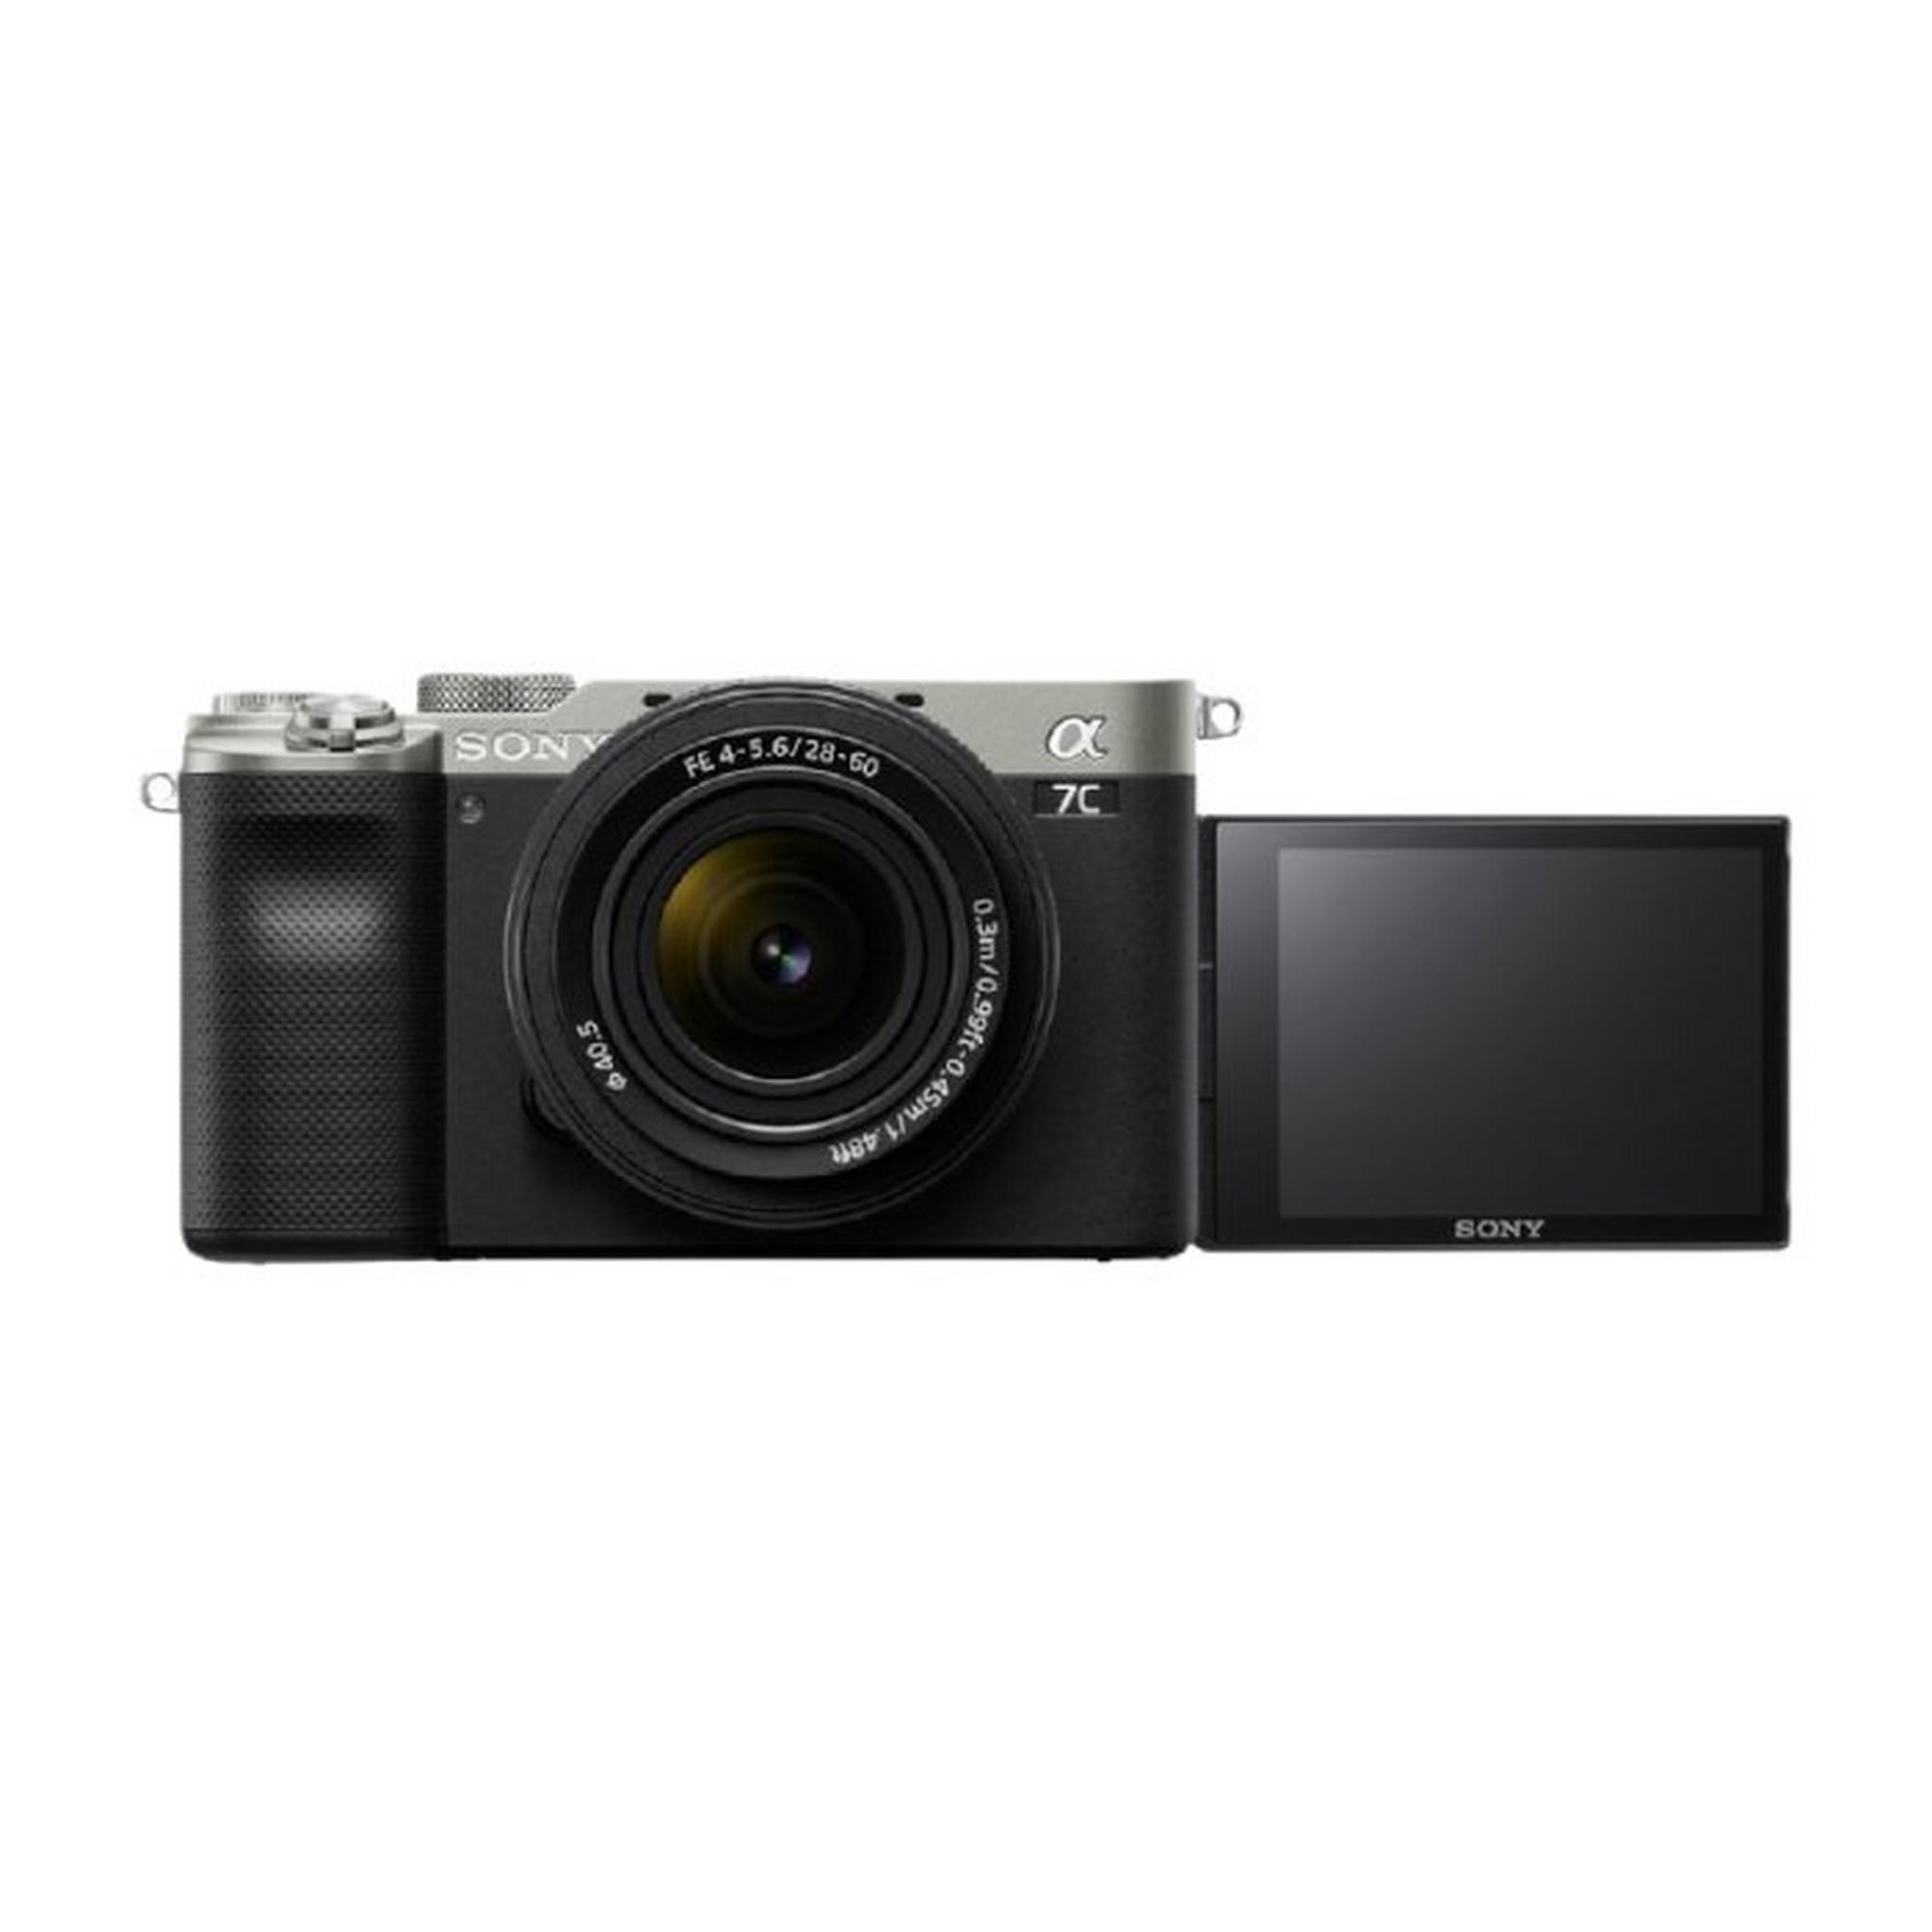 كاميرا ألفا 7C الصغيرة الحجم ذات الإطار الكامل بدون مرآة + عدسة FE مقاس 28-60 مم F4-5.6 - فضي